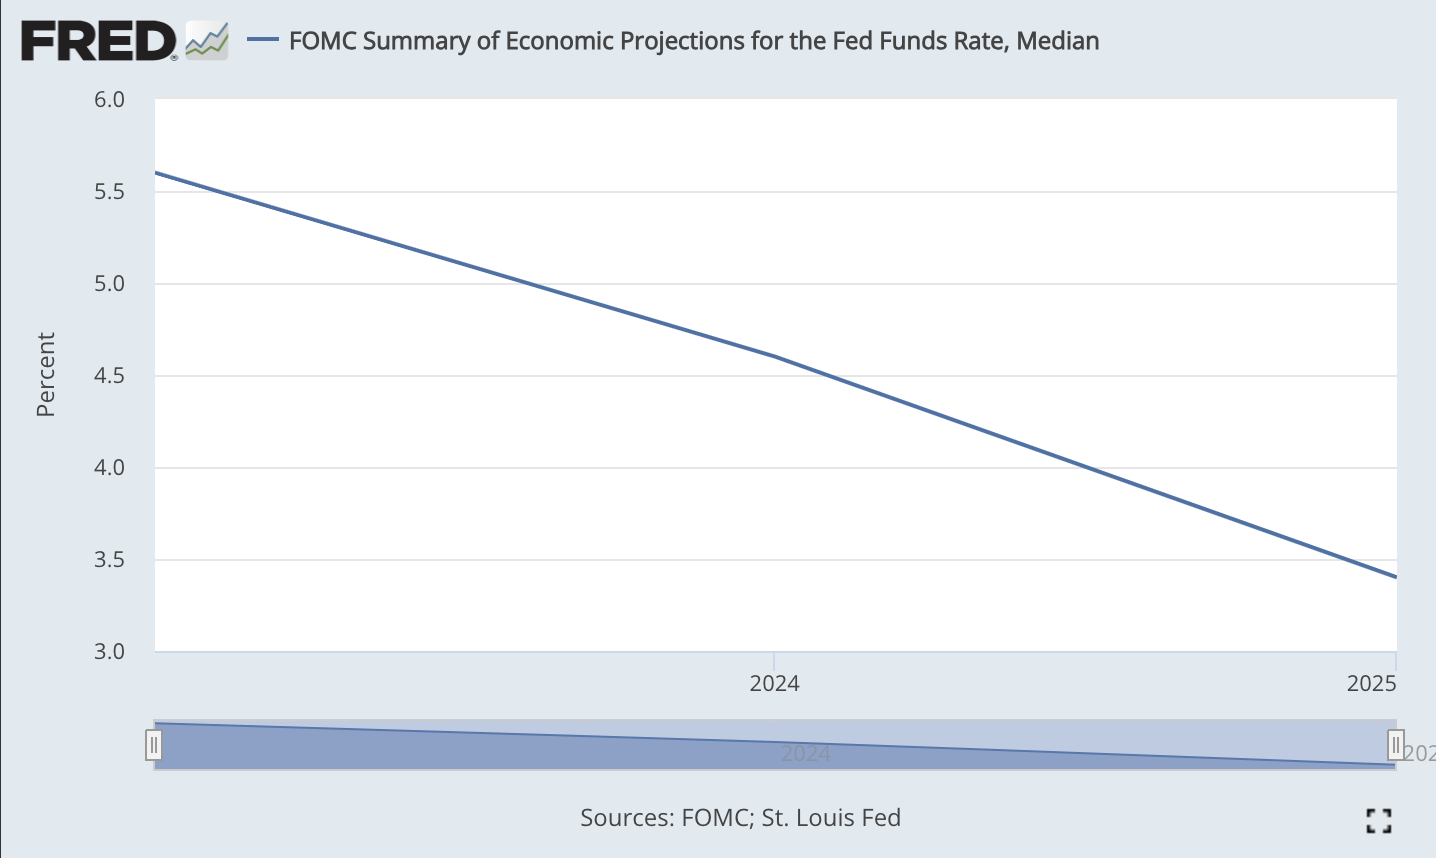 Resumen del FOMC de proyecciones económicas para la tasa de fondos federales